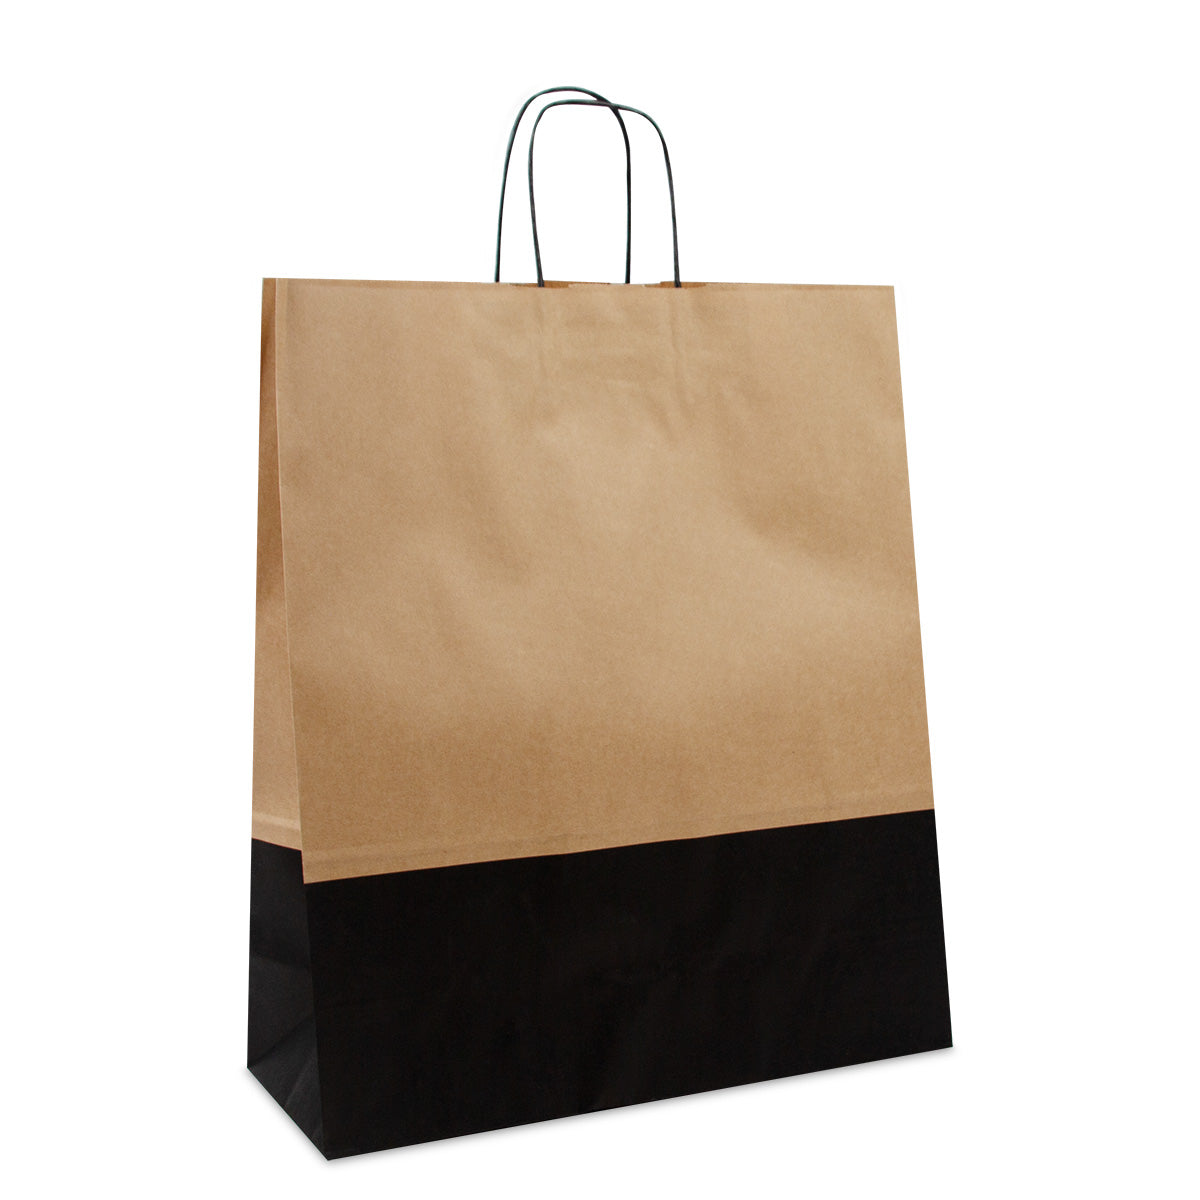 Papieren tassen , gedraaid handvat  - Bruin/zwart duotone